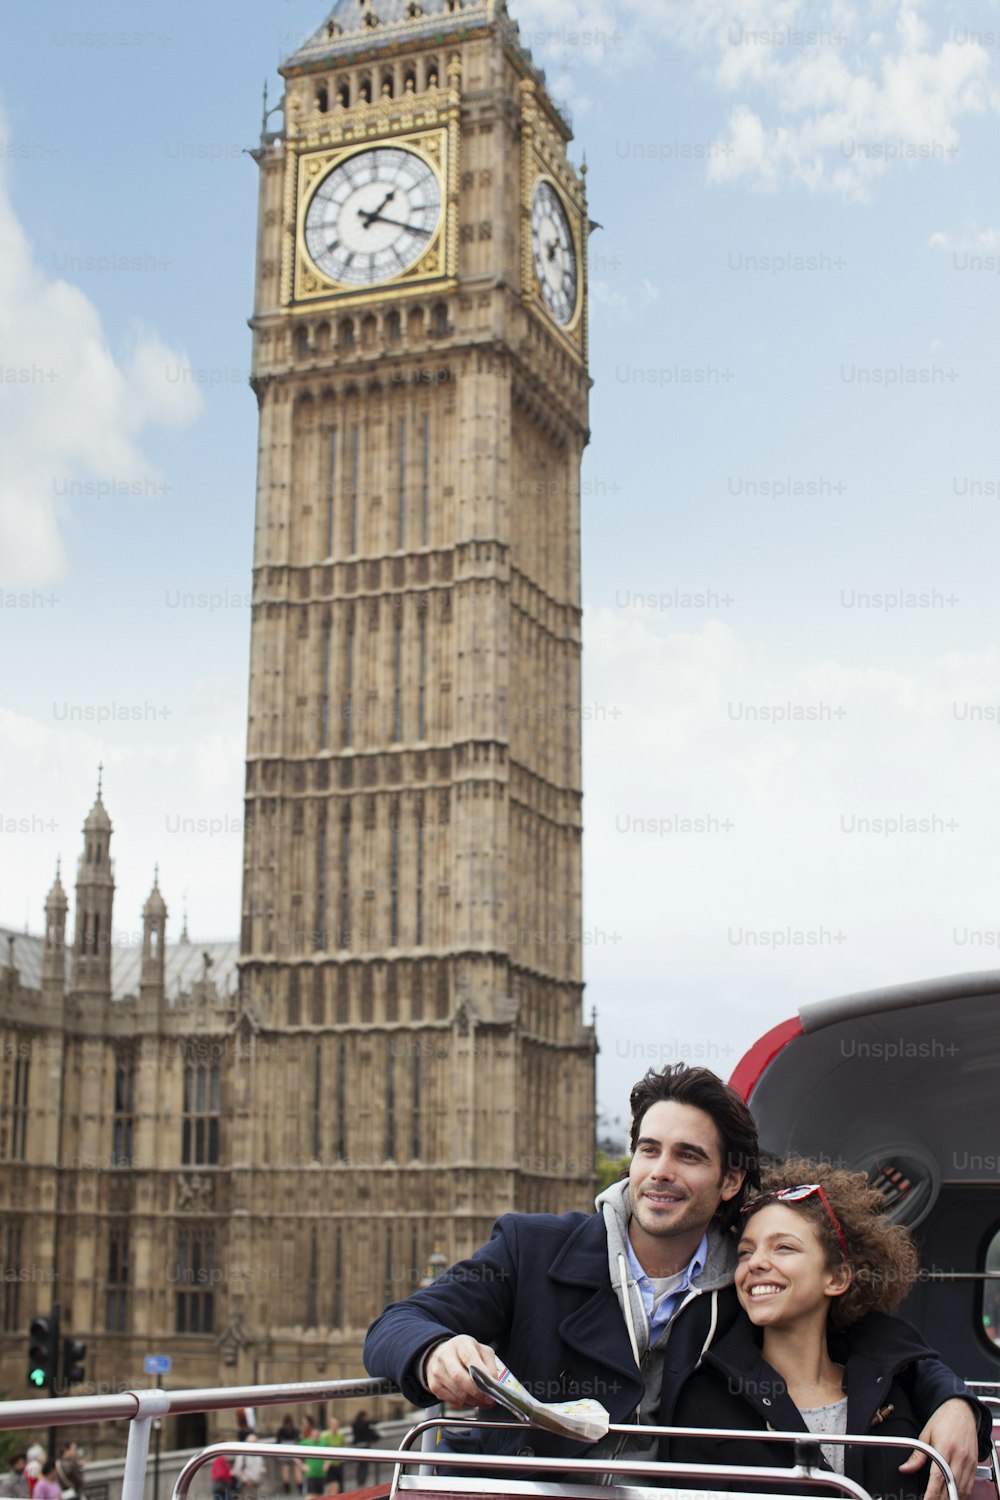 Un hombre y una mujer tomando una foto frente a la torre del reloj del Big Ben